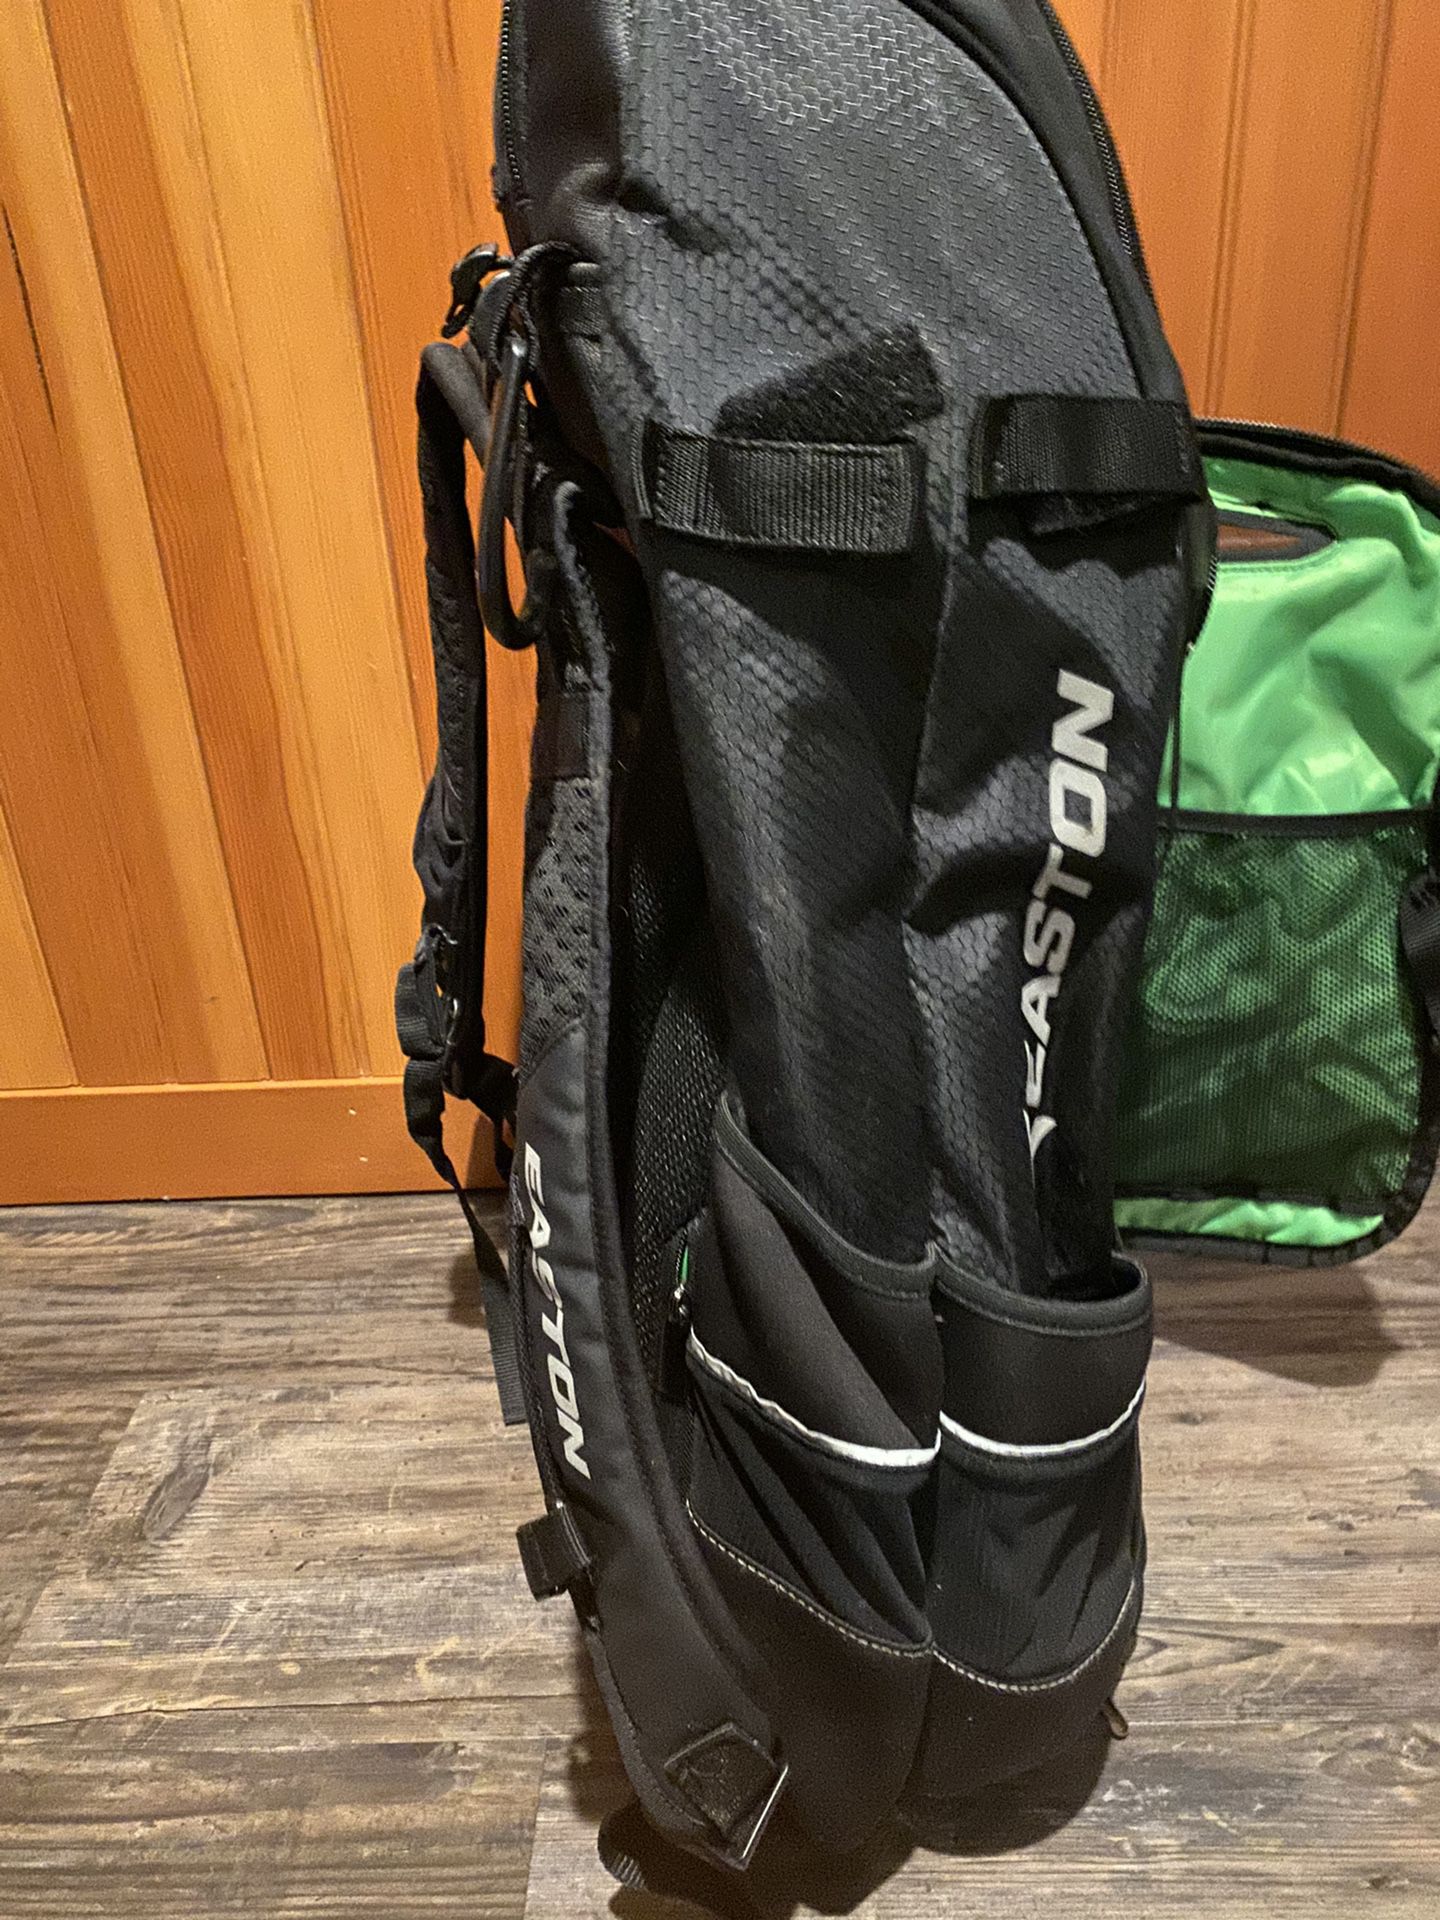 Easton travel backpack